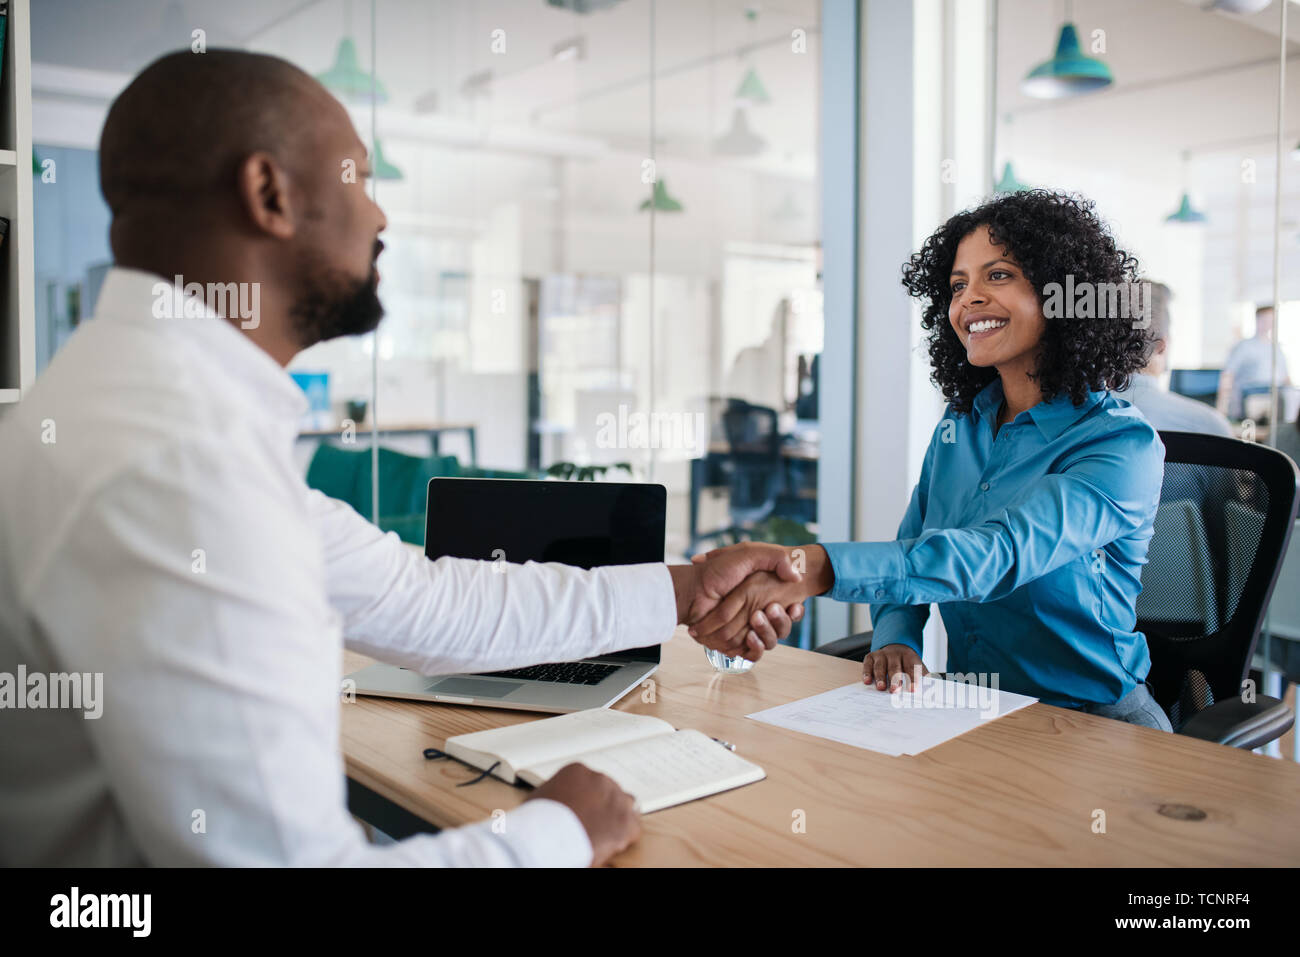 Smiling African American manager assis à son bureau dans un bureau en serrant la main d'un demandeur d'emploi après une entrevue Banque D'Images